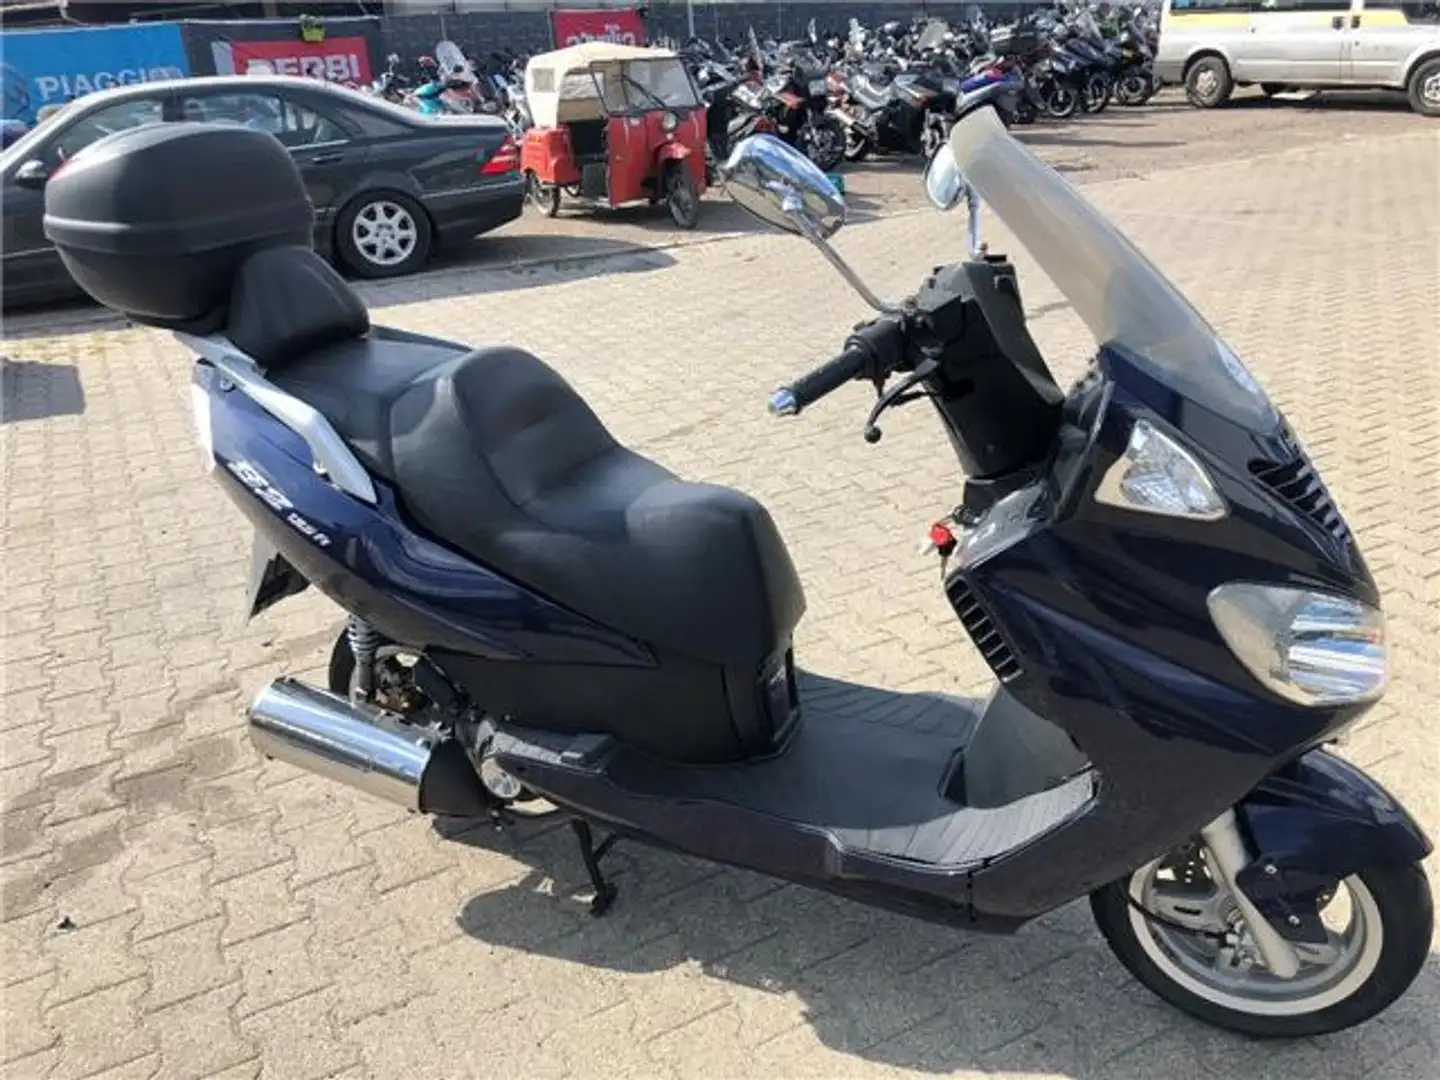 Daelim Freewing 125 Roller/Scooter in Blau gebraucht in Herne für € 950,-